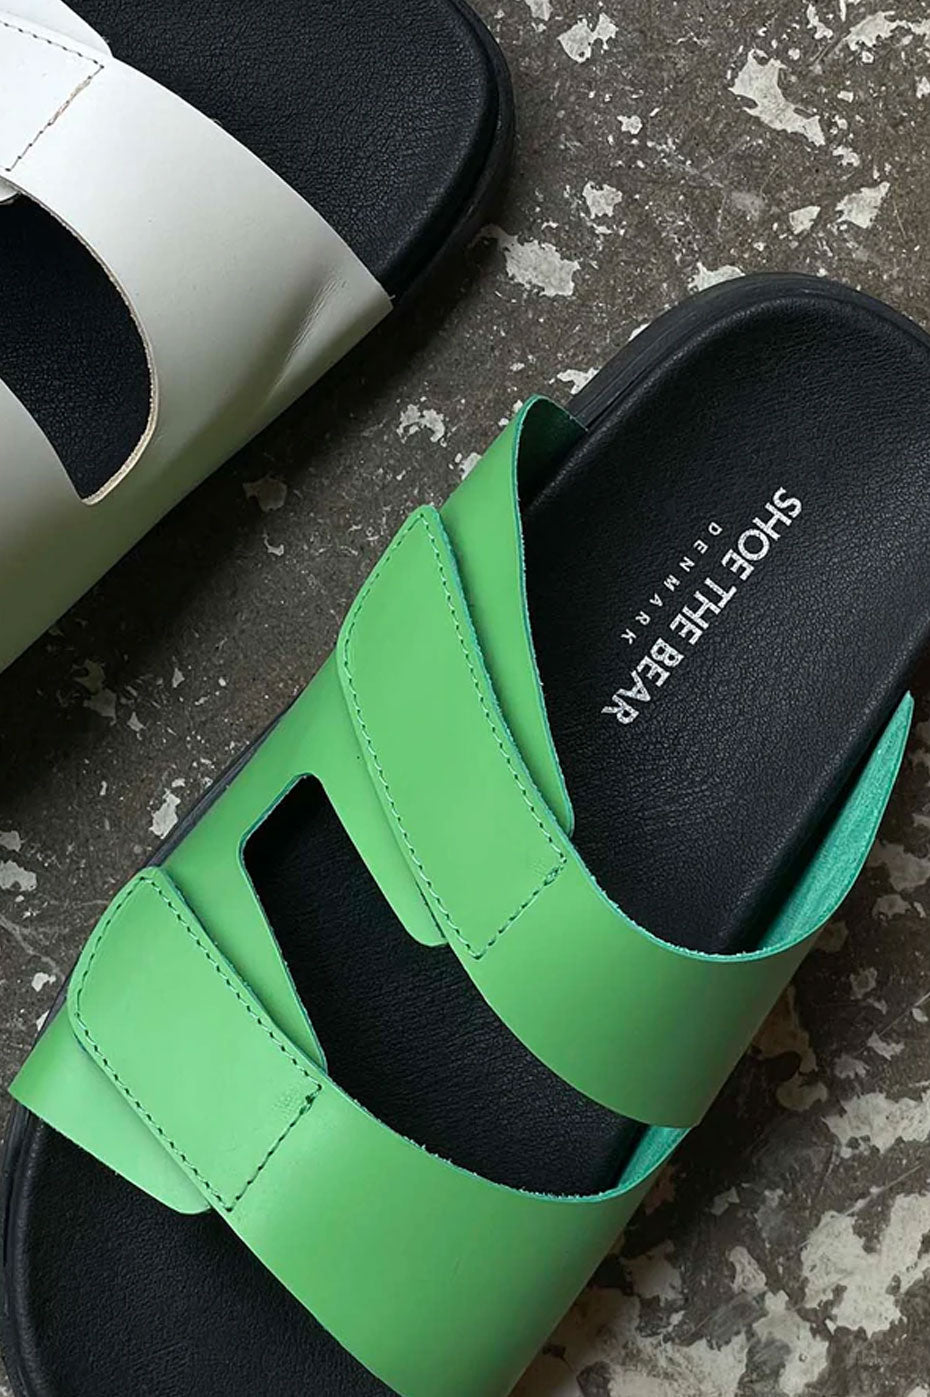 Green Fern Velcro Sandal